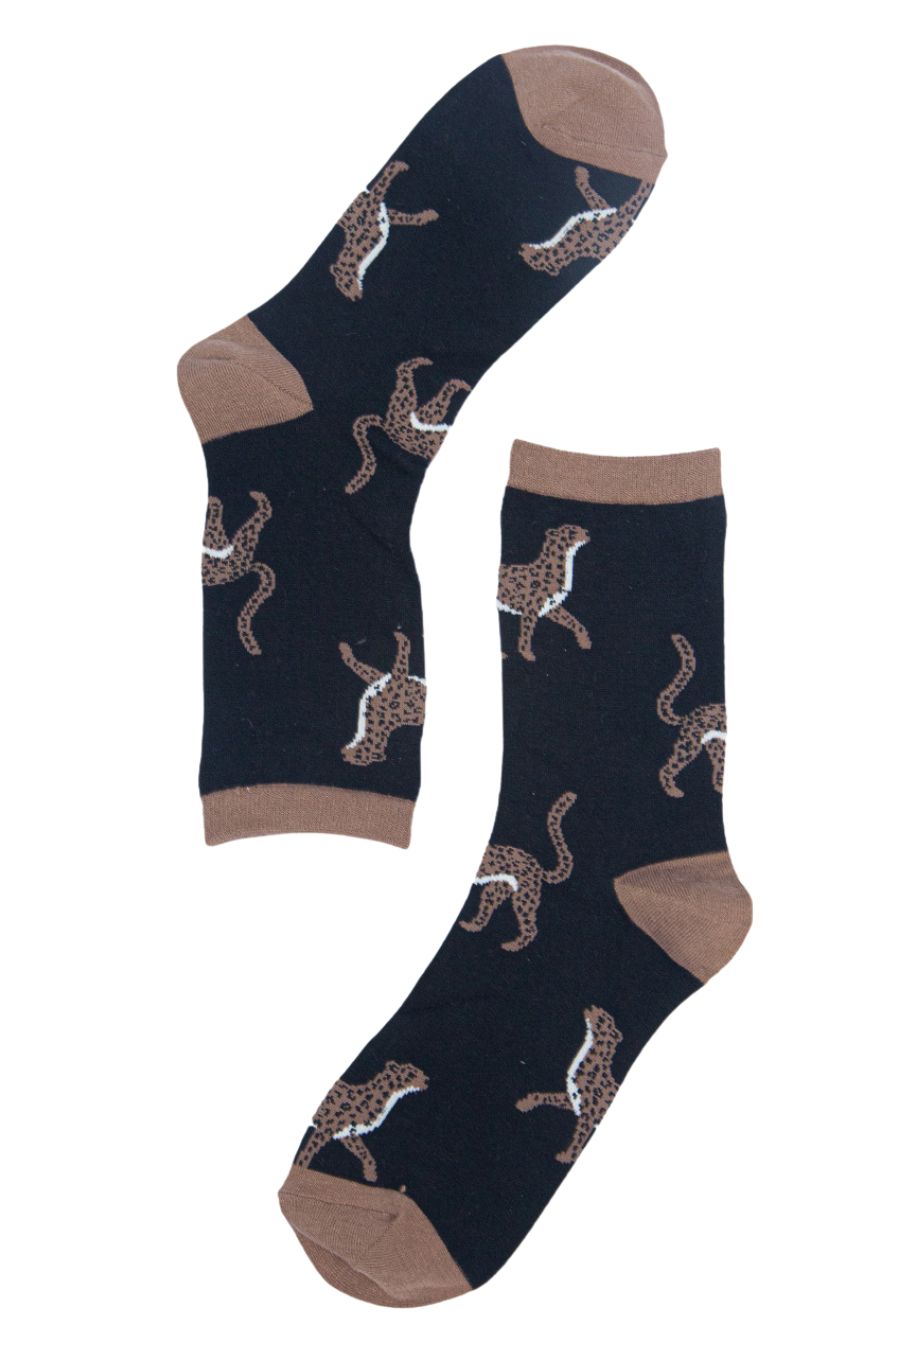 Cheetah bamboo socks